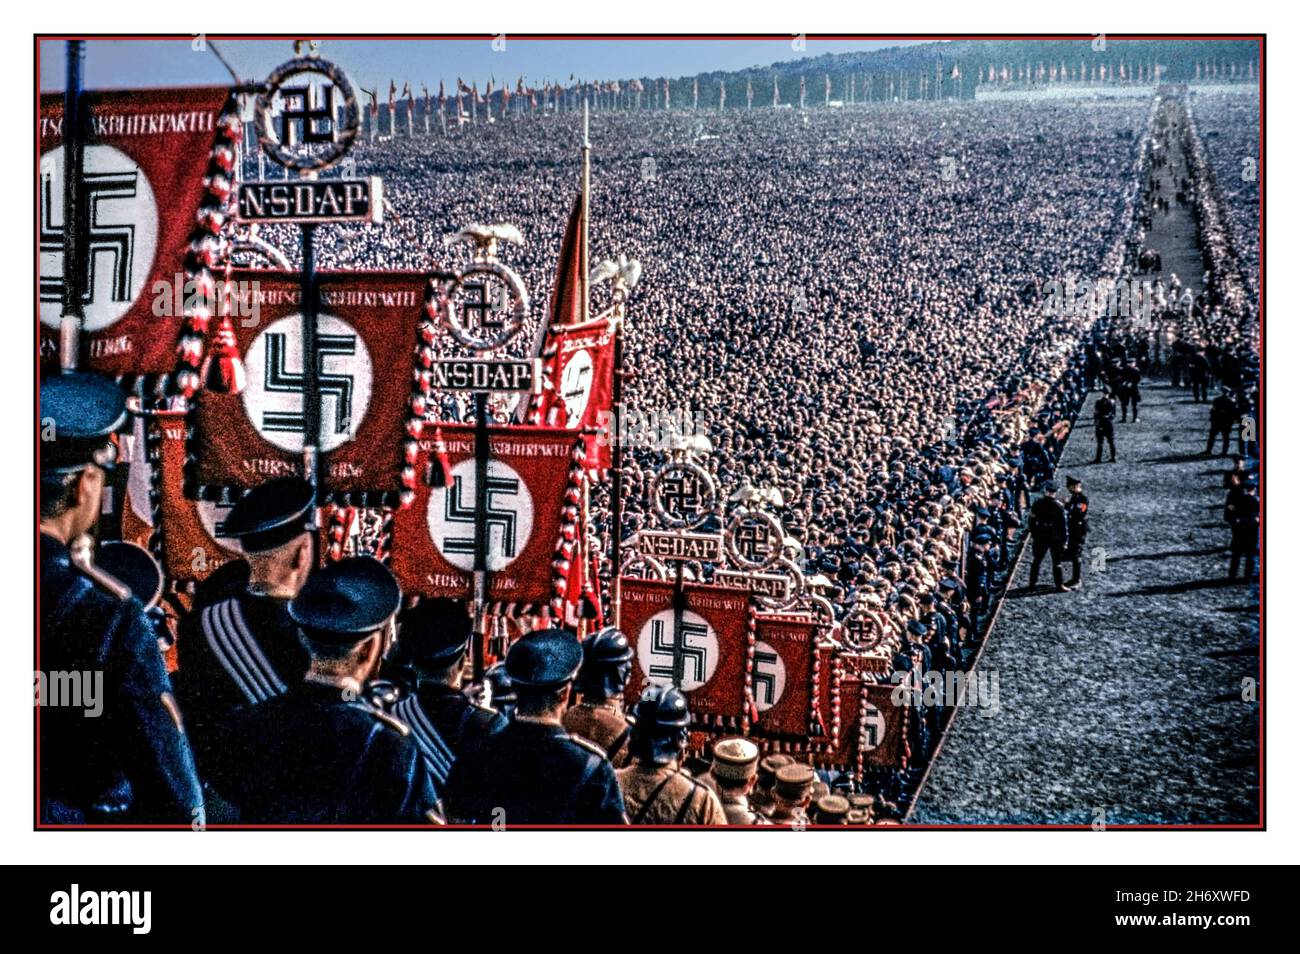 1930s-nsdap-banner-und-hakenkreuz-emblem-im-vordergrund-in-farbe-mit-transparenten-und-fahnen-im-uberfullten-hauptaula-im-freien-mit-tausenden-von-nazi-parteiunterstutzern-und-seltenen-farbbildern-mit-nsdap-bannern-und-hakenkreuz-emblem-im-vordergrund-die-nazi-partei-offiziell-die-nationalsozialistische-deutsche-arbeiterpartei-nsdap-war-eine-rechtsextreme-politische-partei-in-deutschland-die-zwischen-1920-und-1945-aktiv-war-und-die-ideologie-und-propaganda-des-nationalsozialismus-und-der-nazi-partei-unter-der-fuhrung-des-fuhrers-adolf-hitler-nazi-deutschland-schuf-und-unterstutzte-2h6xwfd.jpg